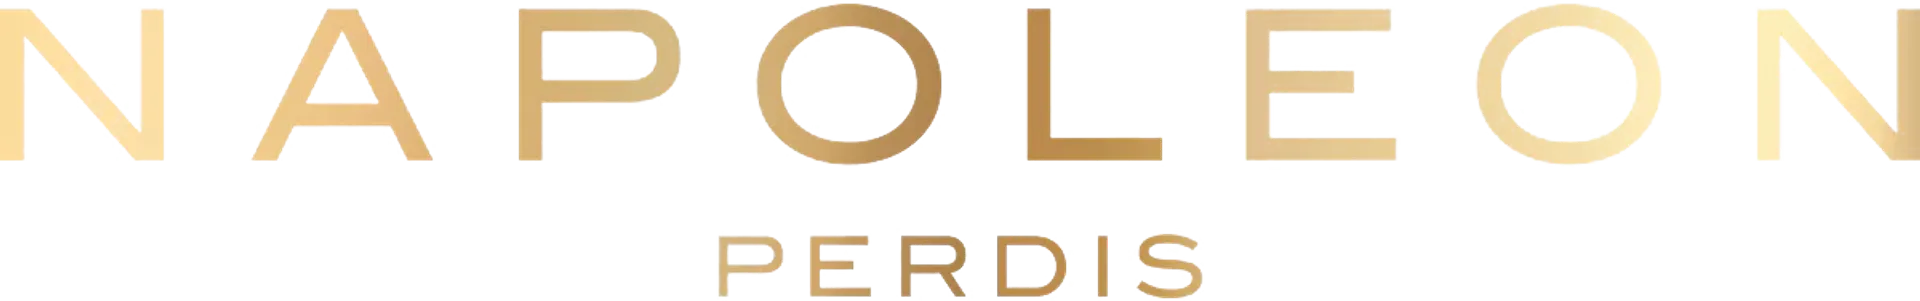 NAPOLEON PERDIS logo of current flyer